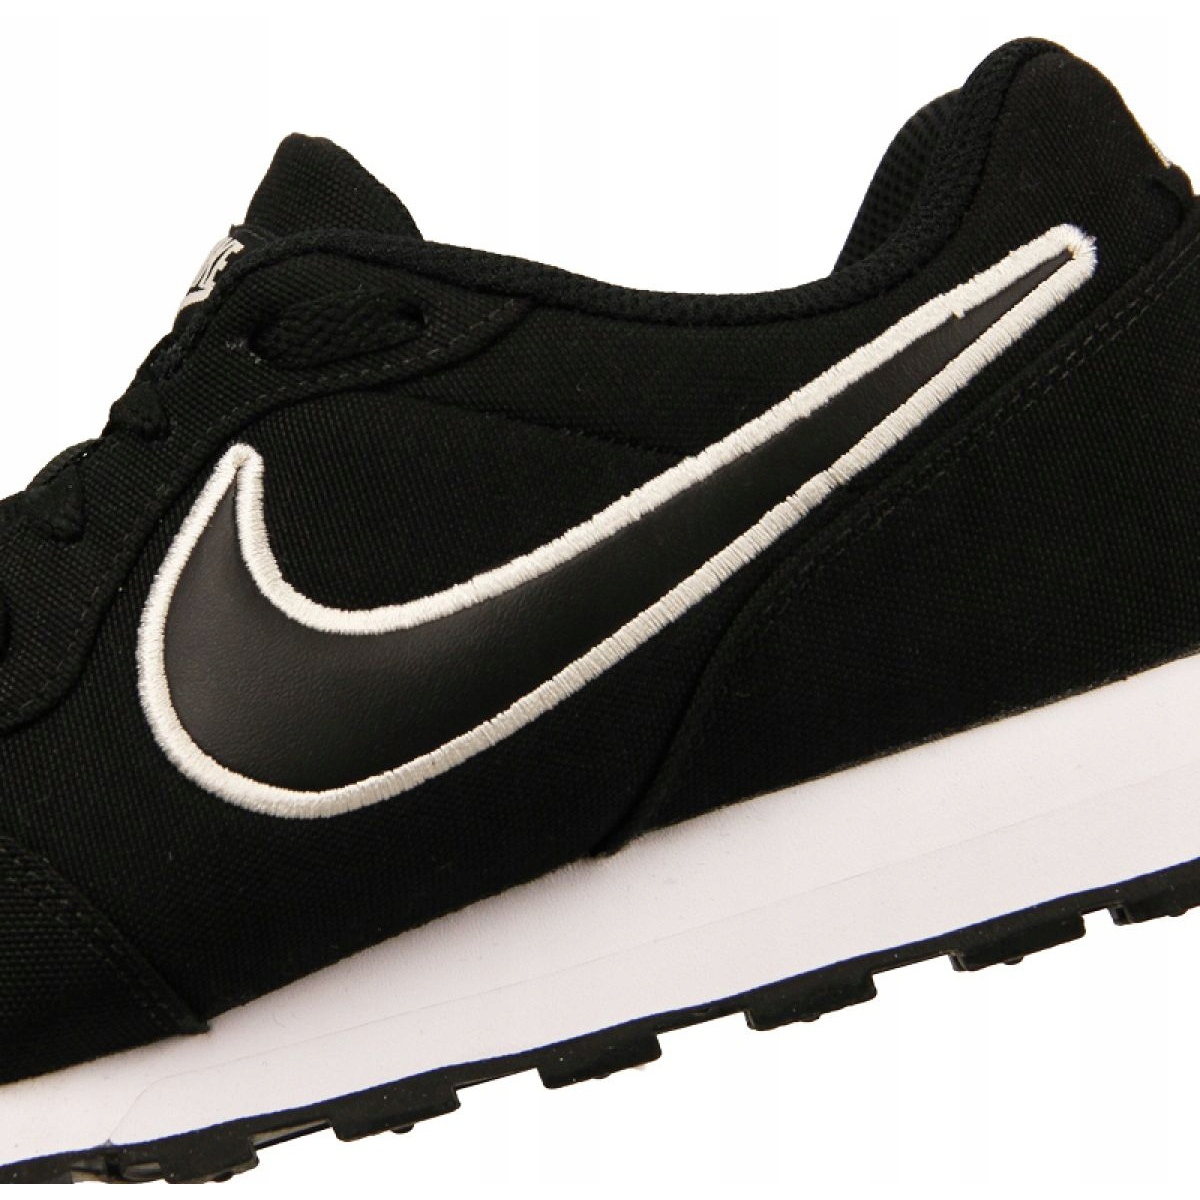 Nike Md Runner 2 Se M AO5377-001 black